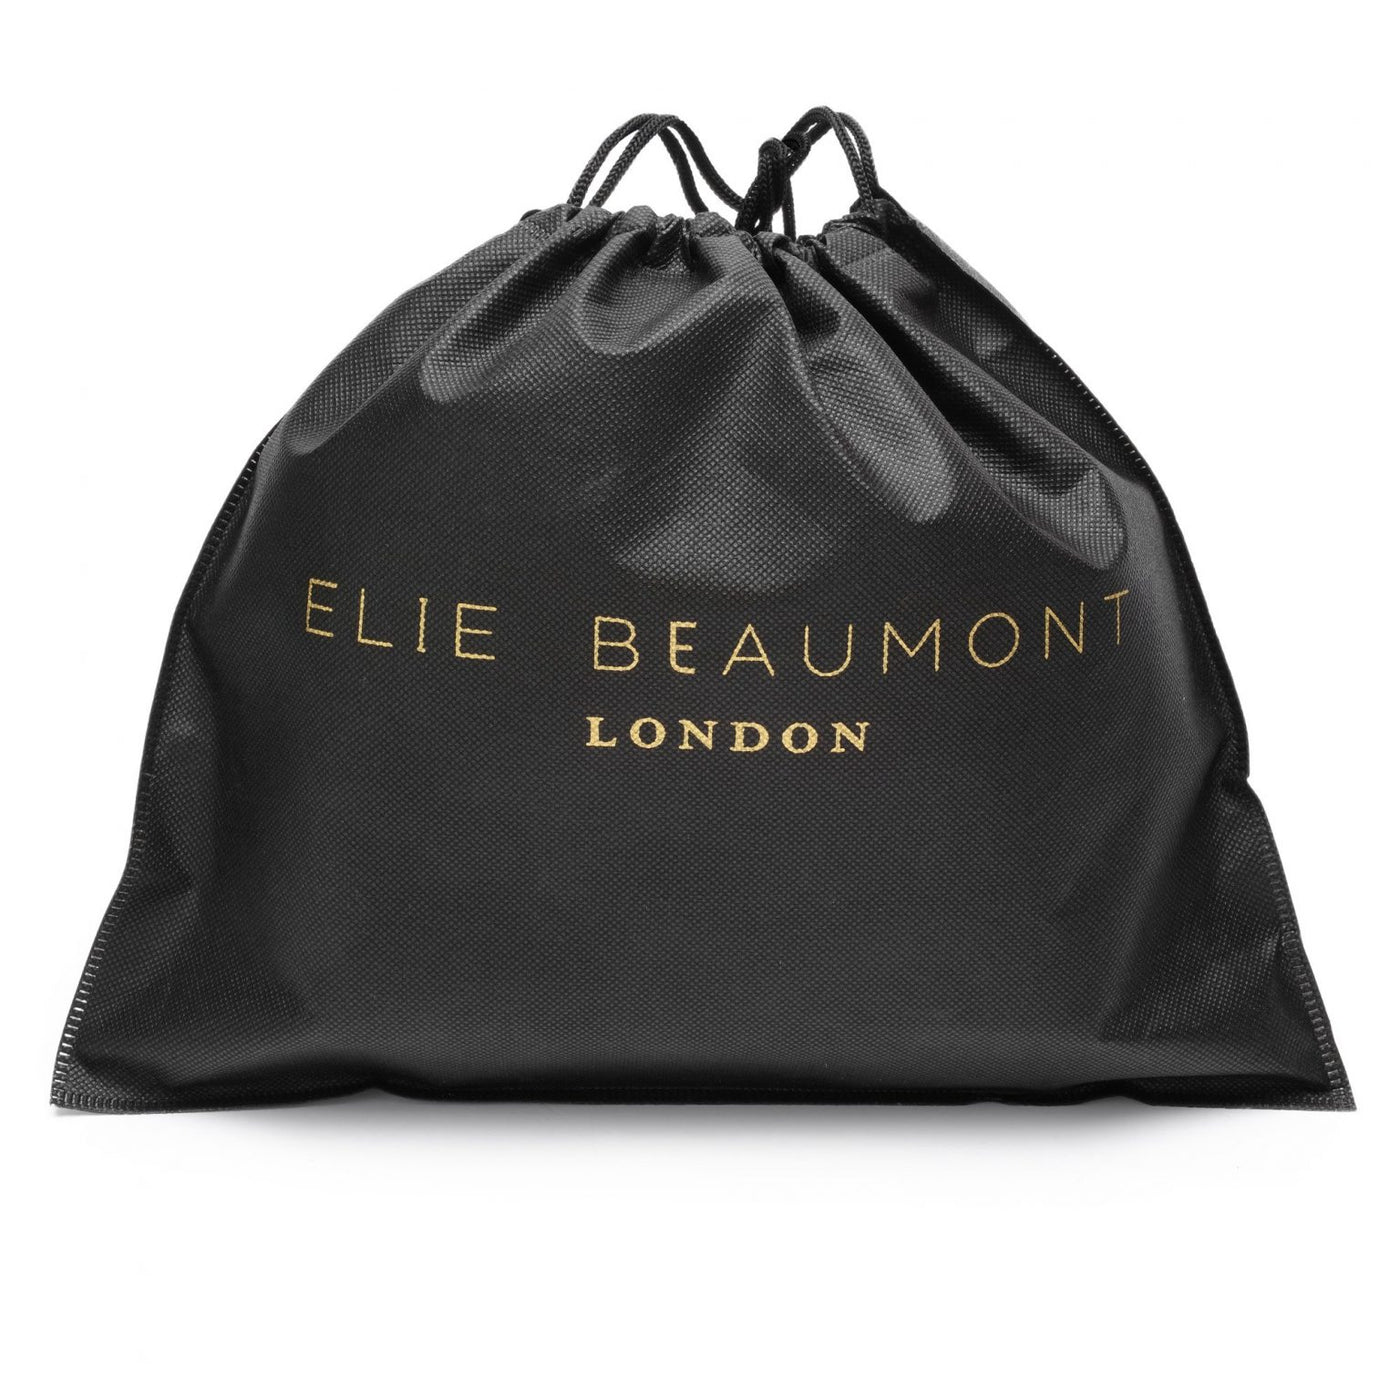 Elie Beaumont Designer Pouch Crossbody Bag - Black